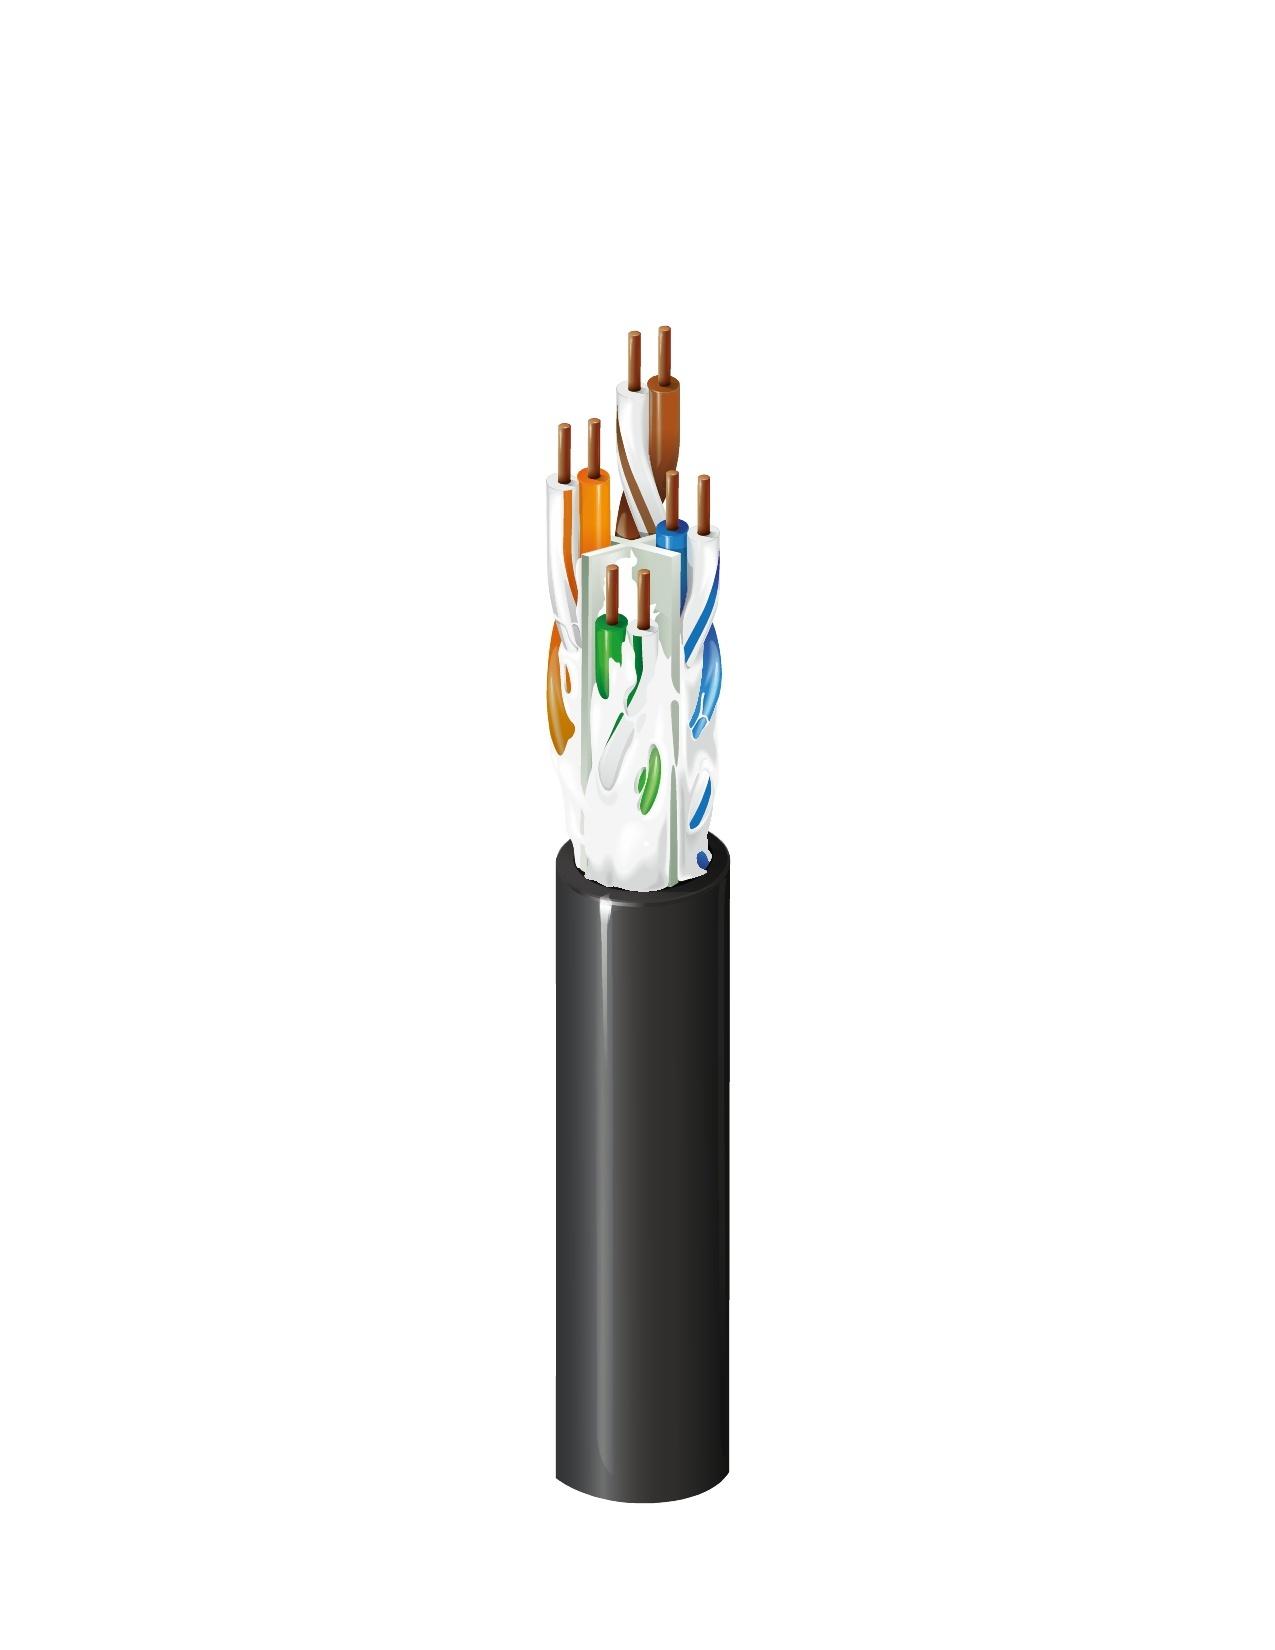 Belden OSP6U 0101000 Category 6 Premise Horizontal Cable (350MHz), OSP Rated, 4-Pair, 24 AWG Solid Bare Copper Conductors, U/UTP, Gel-Filled, Polyethylene Jacket, Black, Reel, 1,000 ft